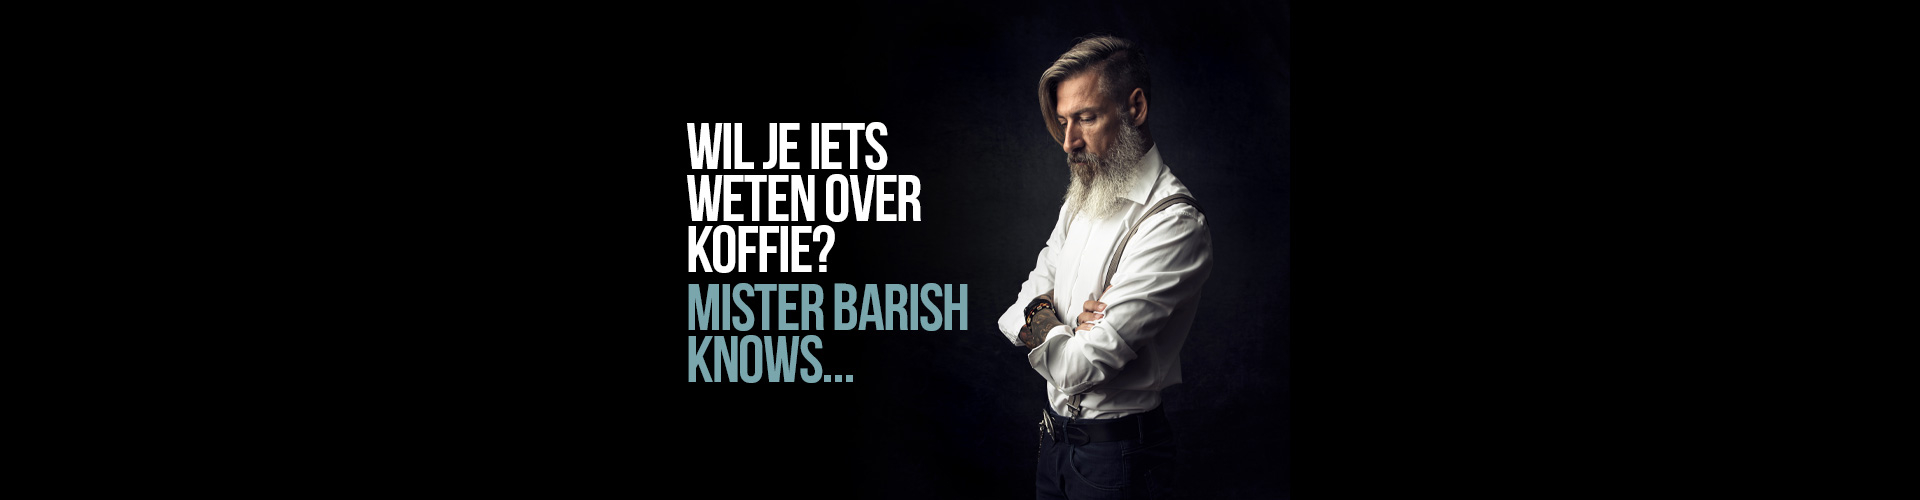 Mister Barish Blog